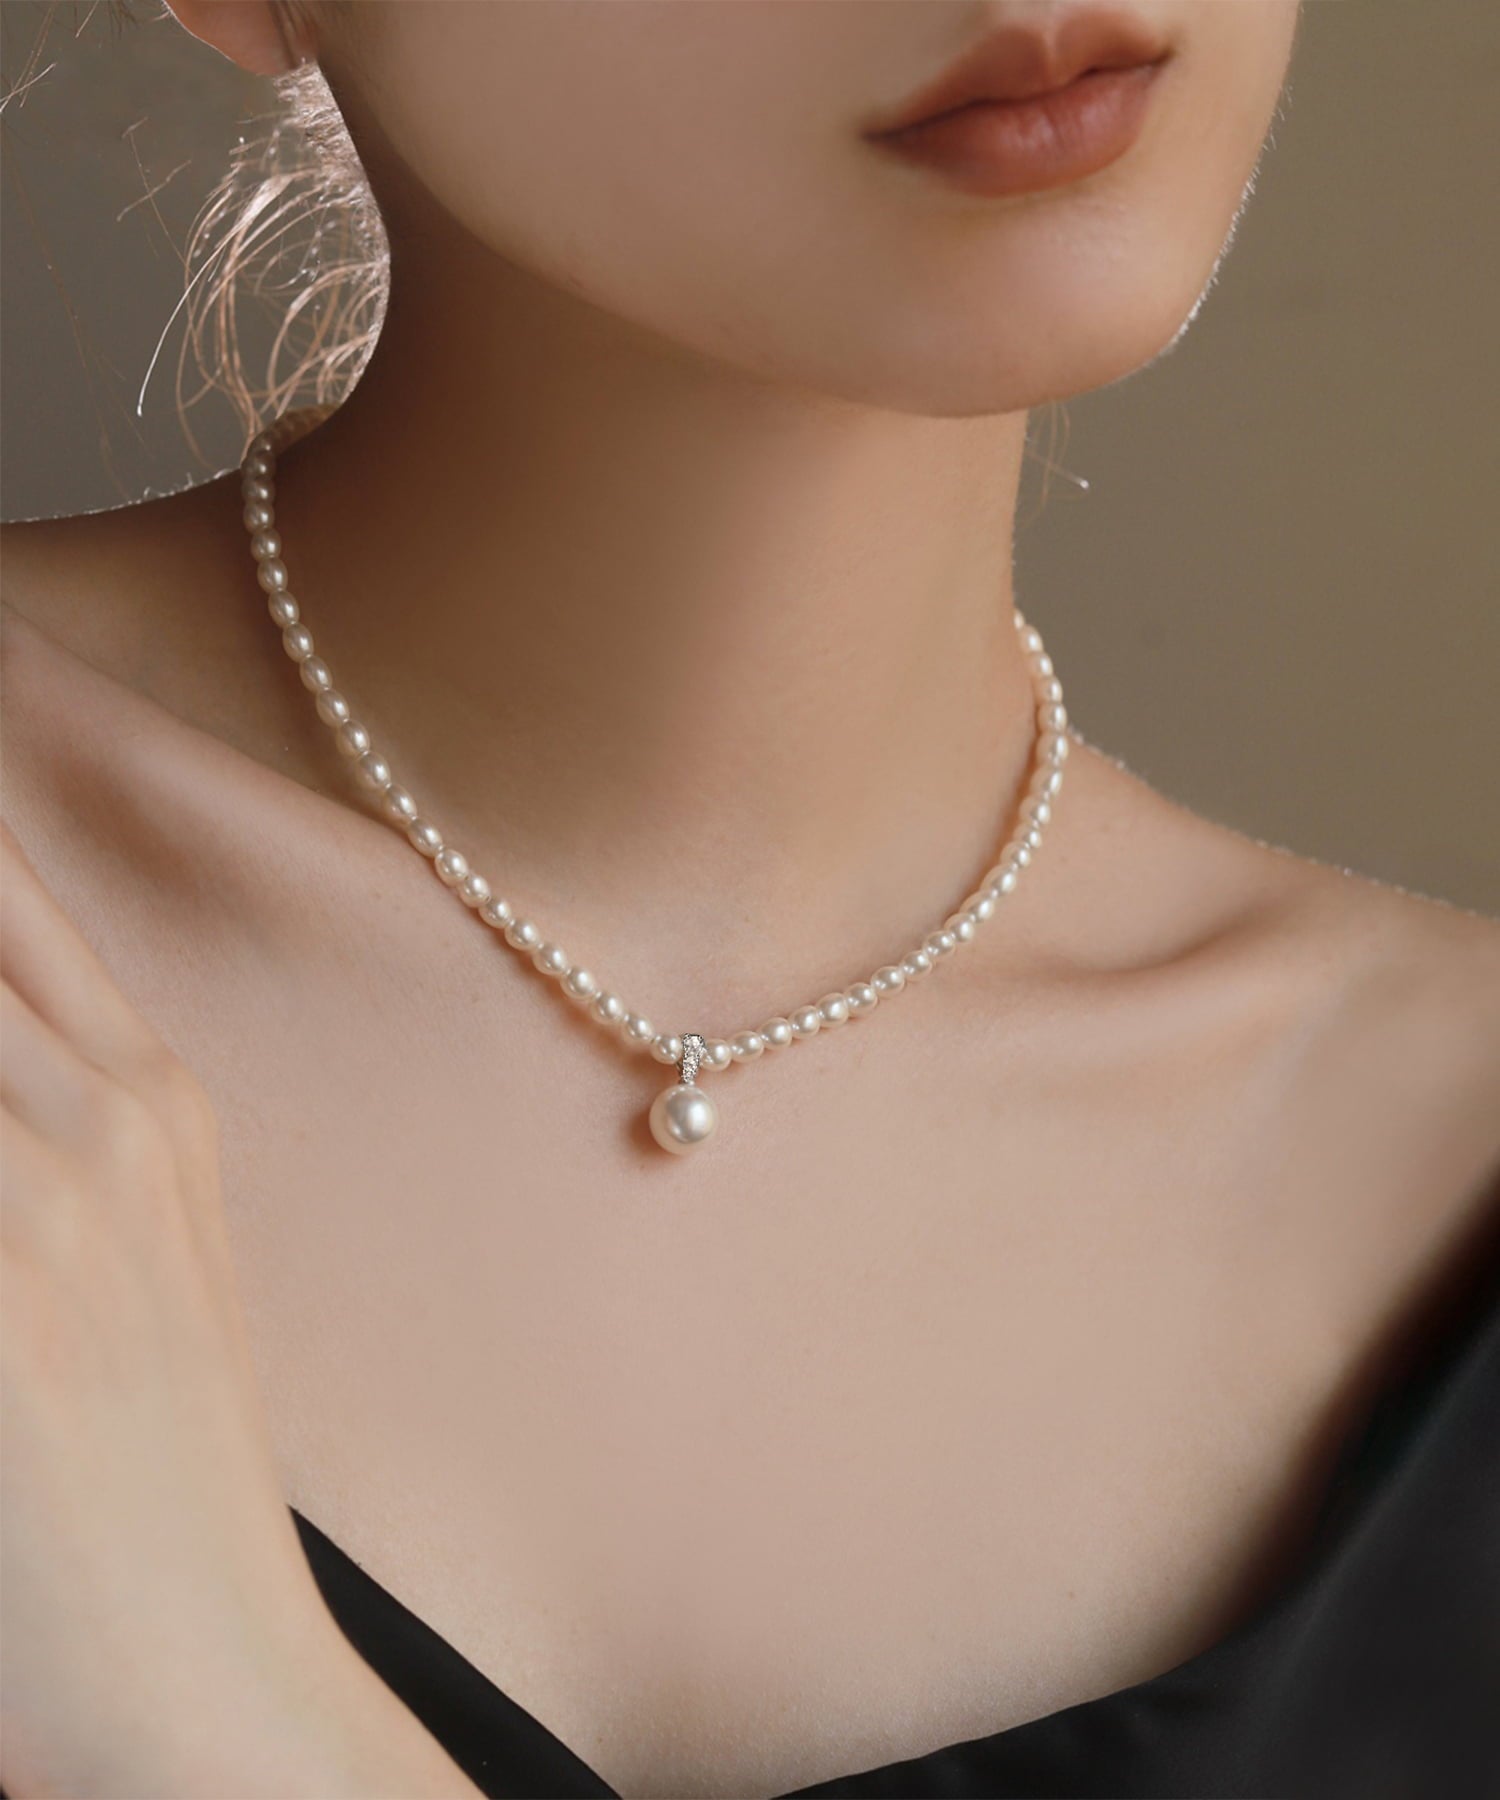 【当日発送】LEJA-クラシックパール真珠ネックレス結婚式 お呼ばれネックレス